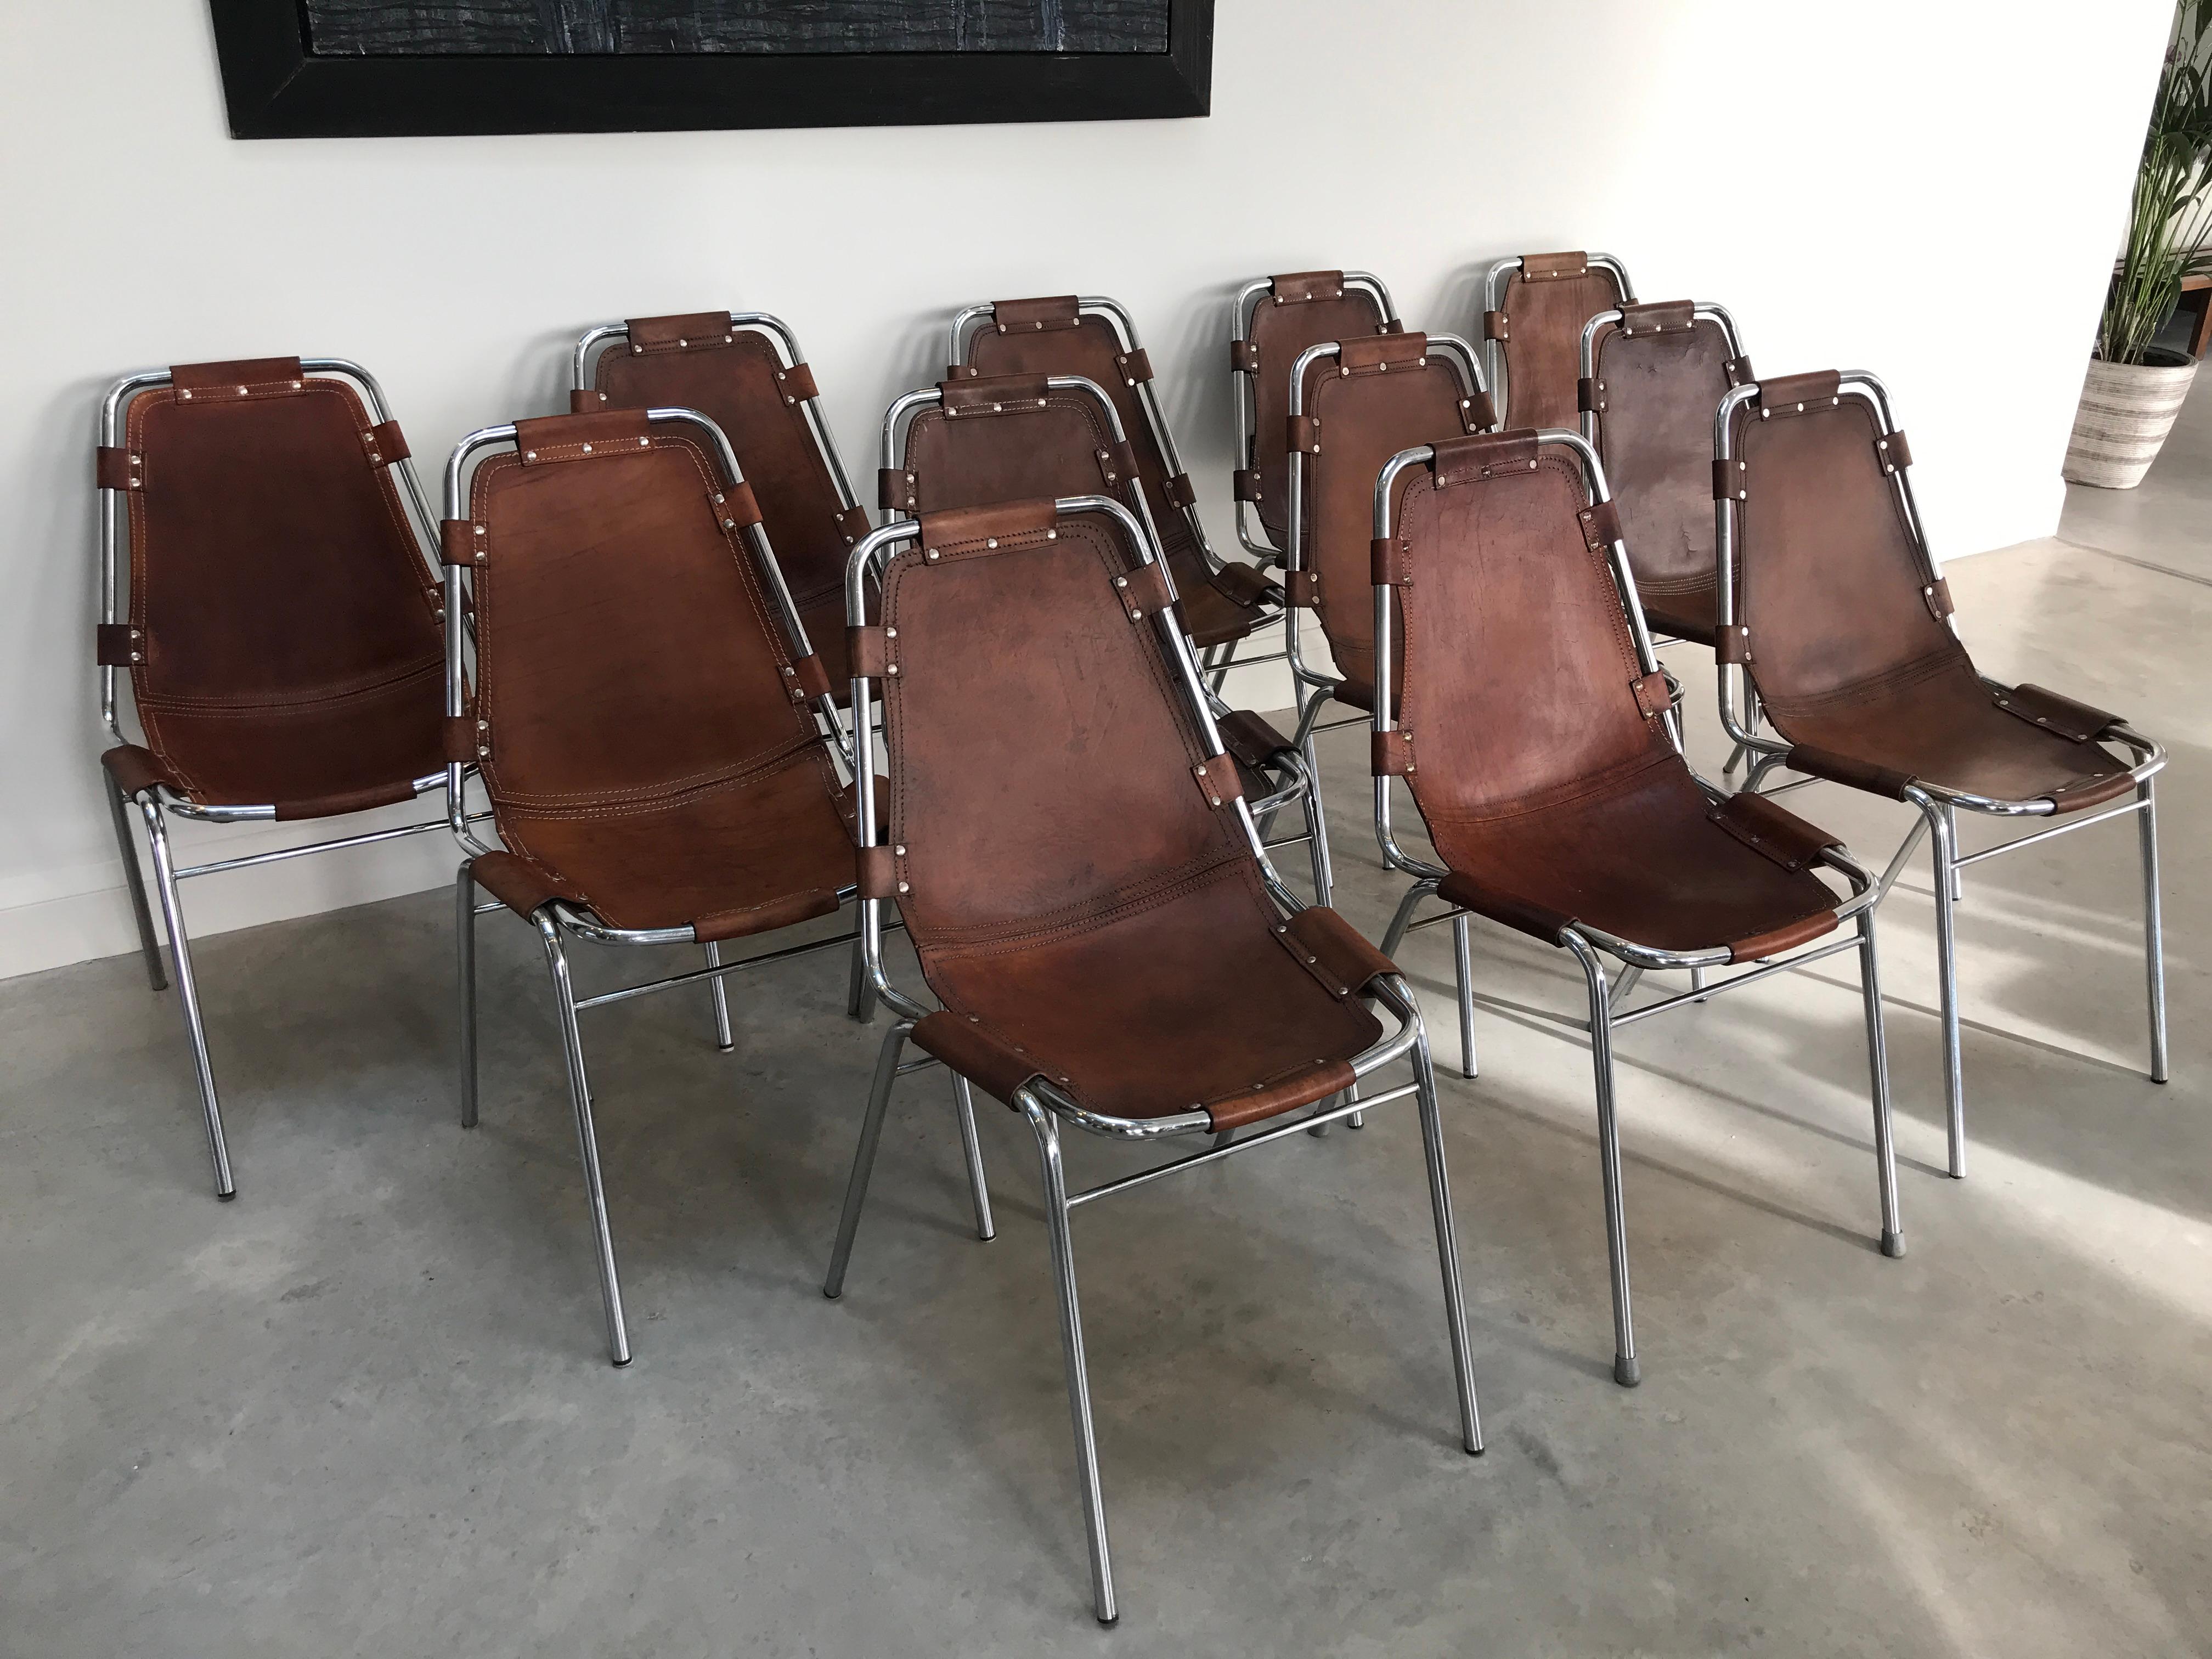 Magnifique ensemble de 12 chaises, difficile de trouver un tel ensemble sur un site web dans le monde entier ! Conçu / choisi par Charlotte Perriand pour et utilisé dans la station de ski Les Arcs, vers 1960. 

Ces chaises ont été choisies par